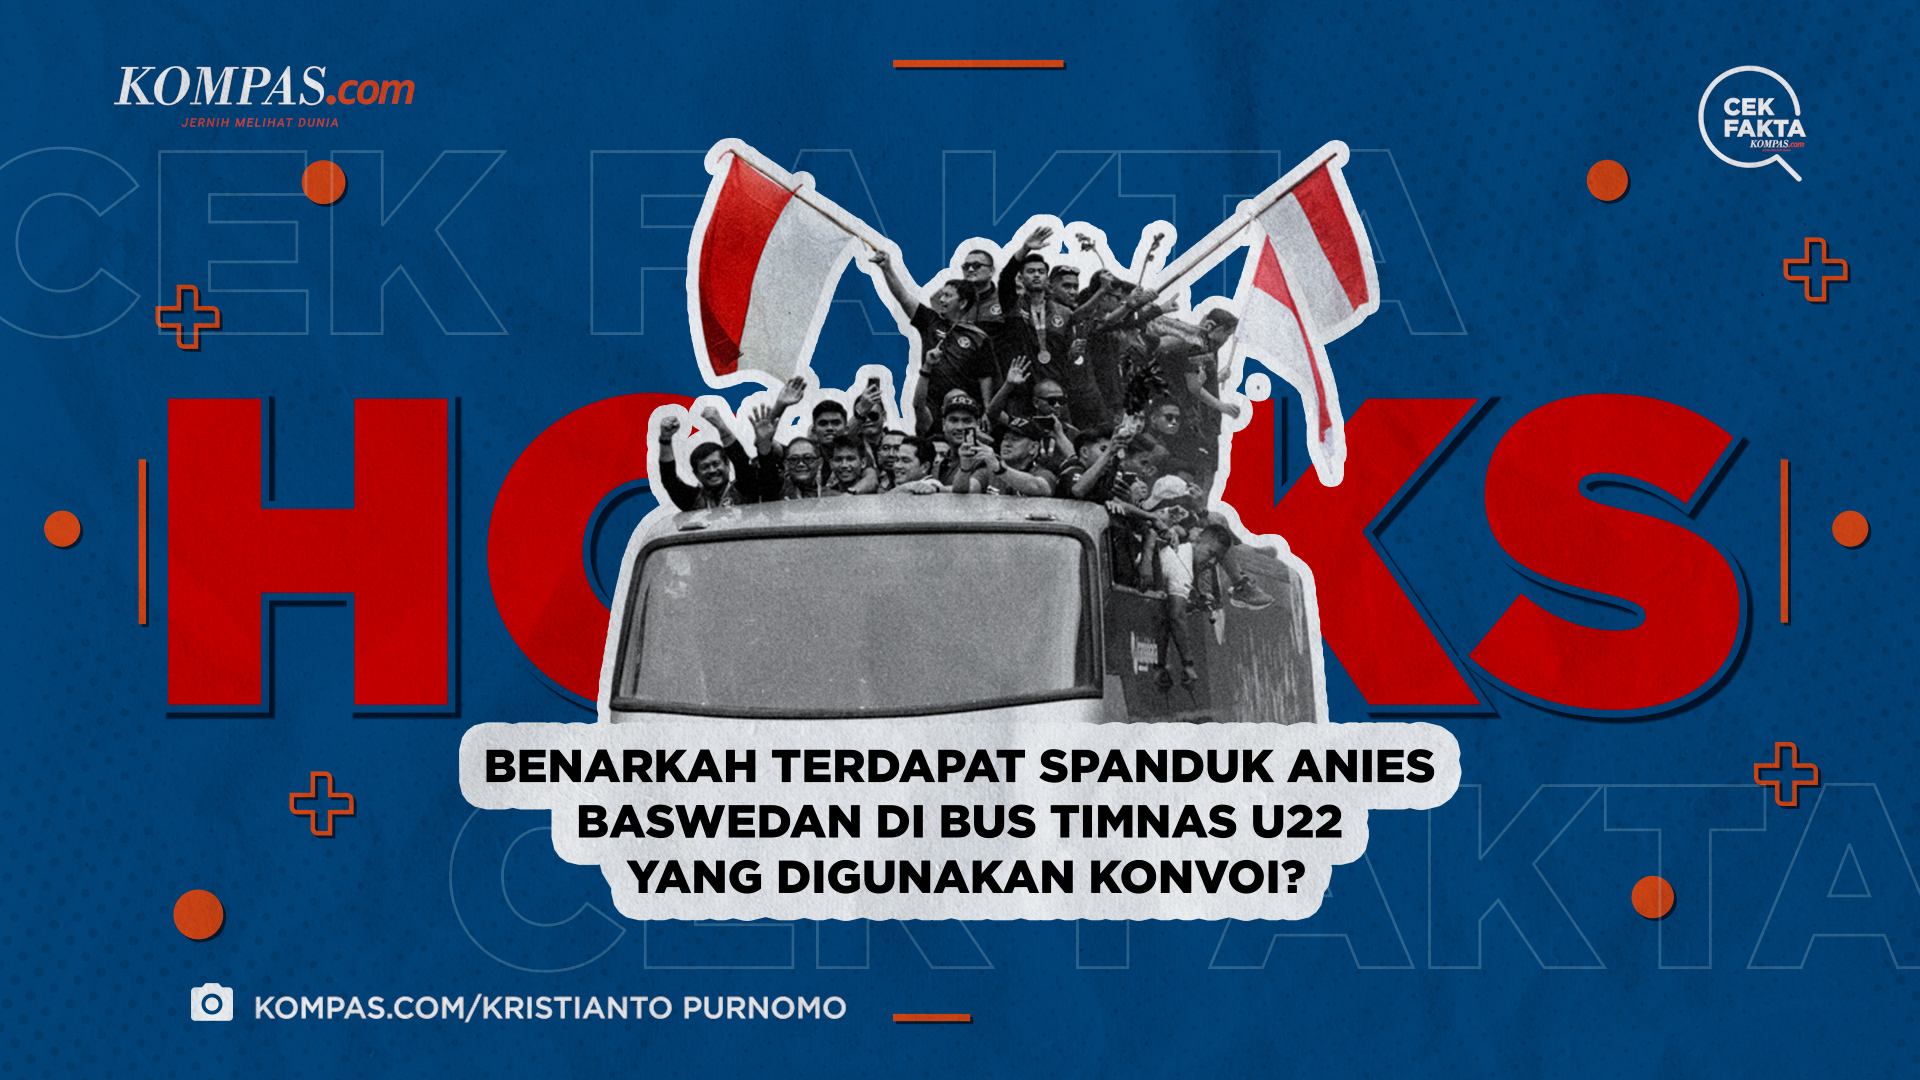 Benarkah Terdapat Spanduk Anies Baswedan di Bus Timnas U-22 yang Digunakan Konvoi?